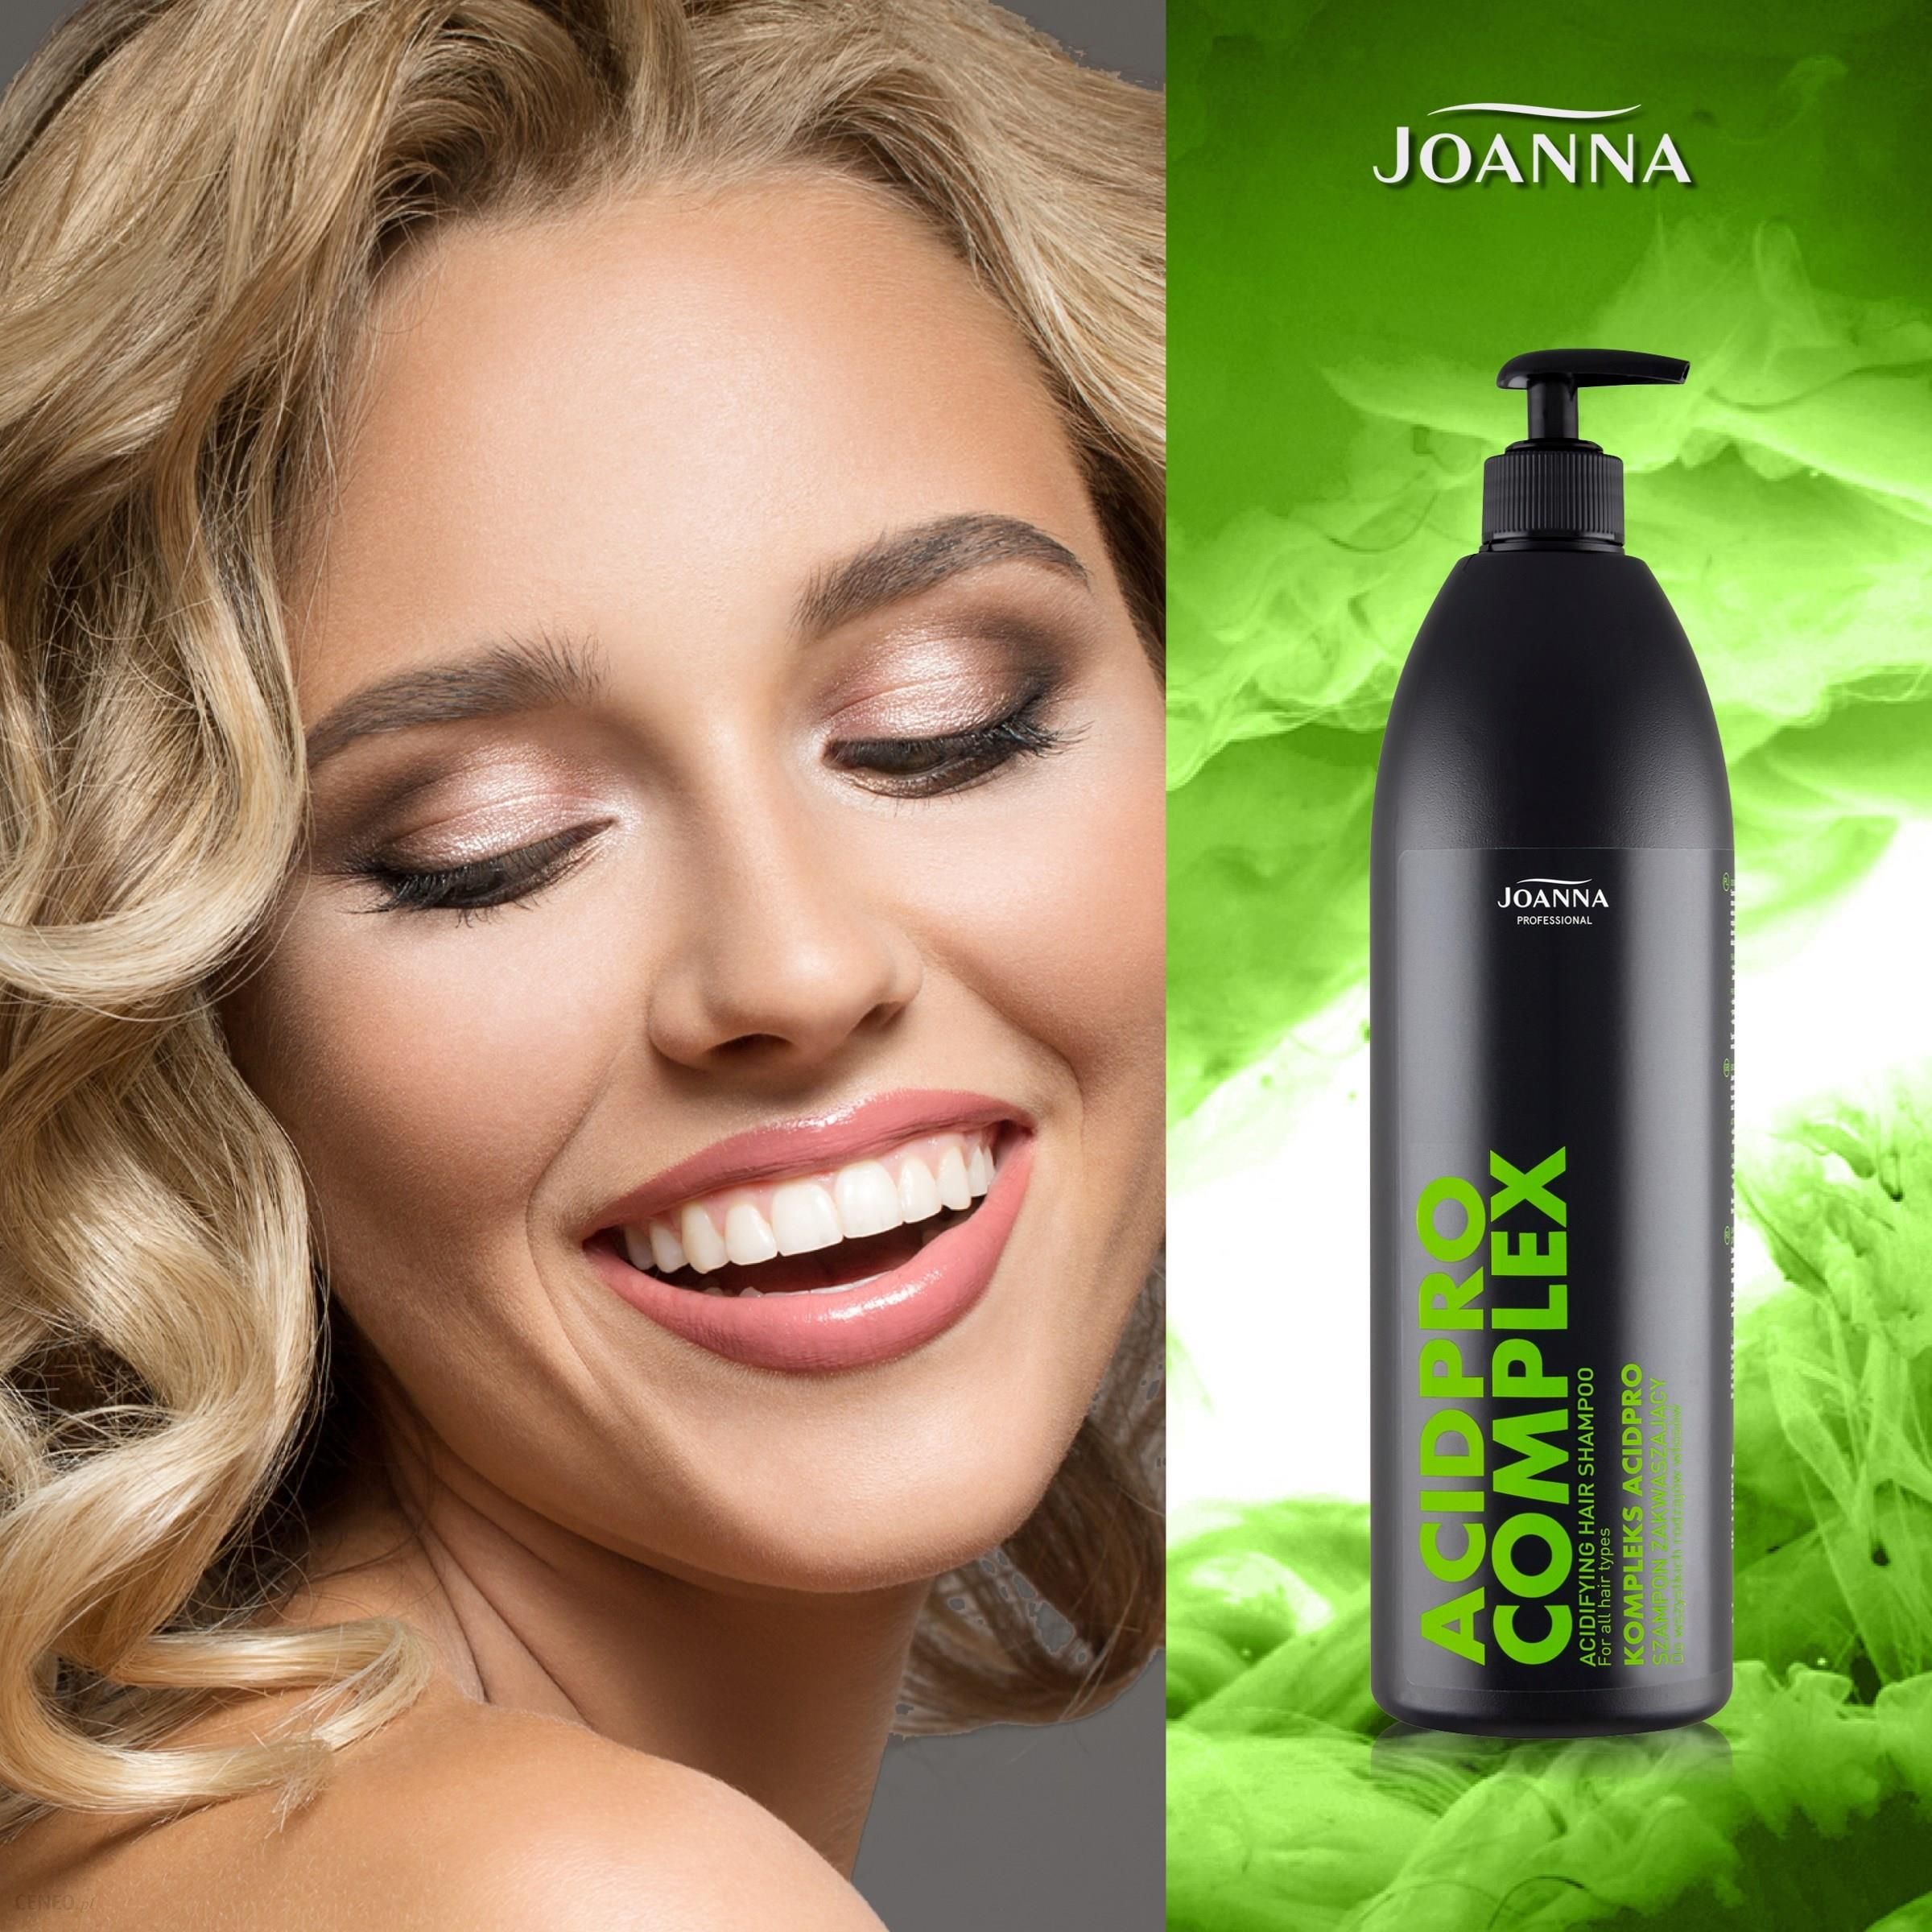 oanna professional szampon wygładzający włosy suche 1000ml